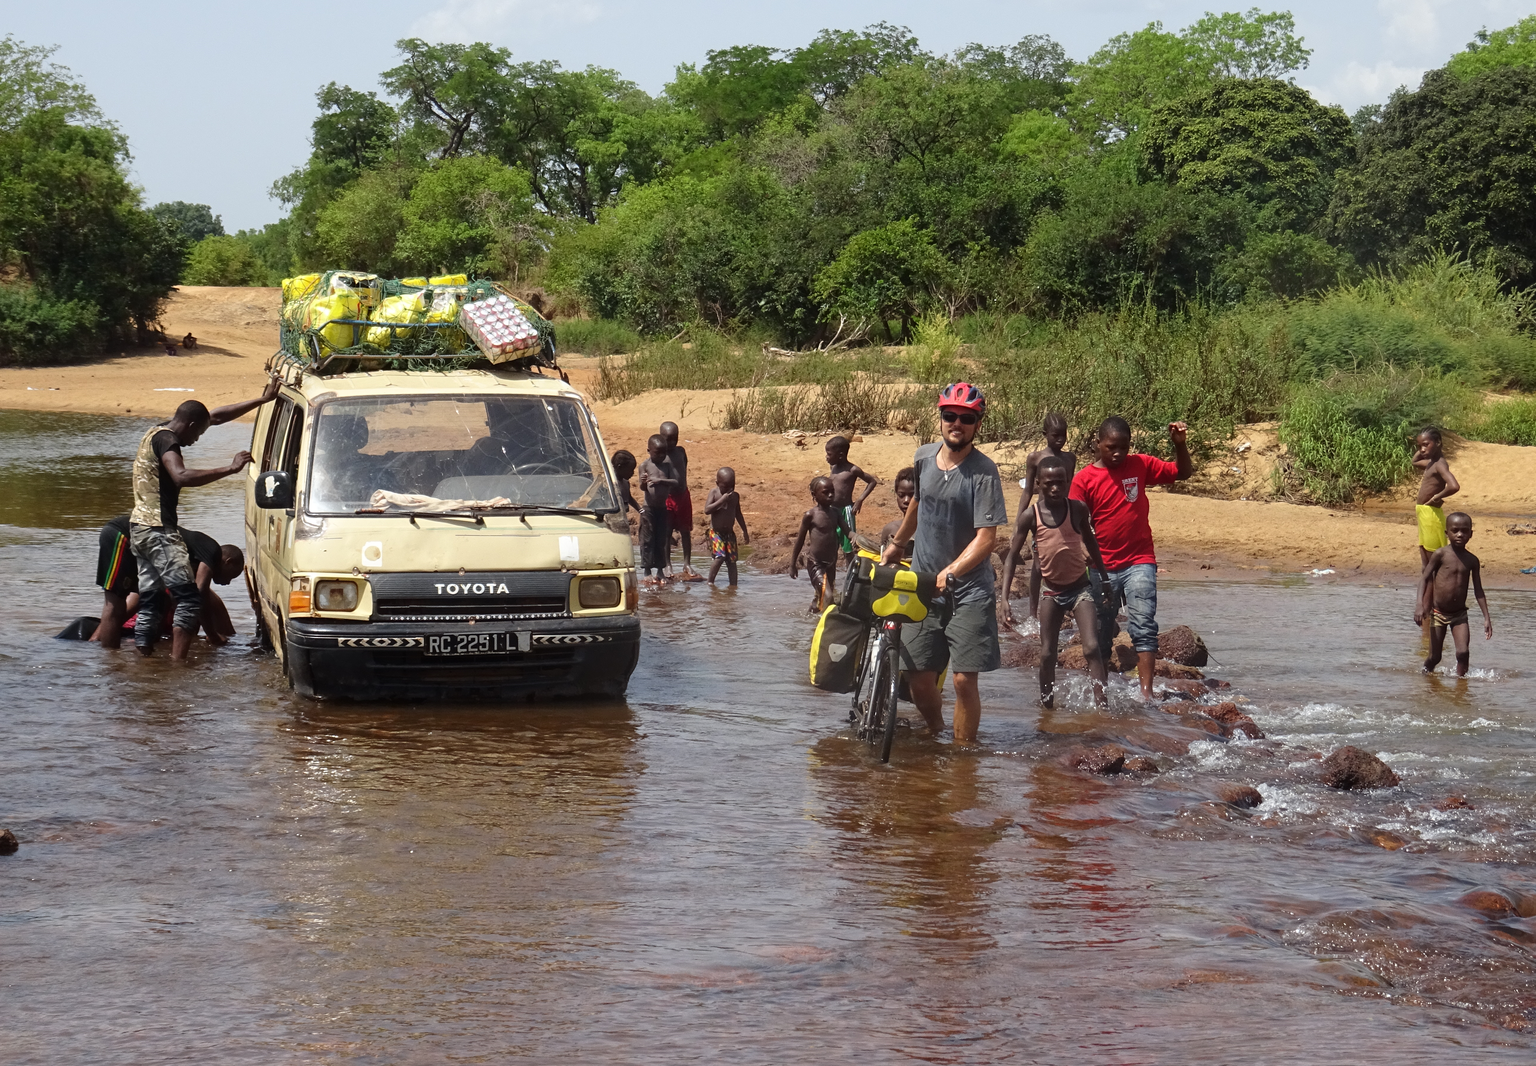 Bild 25
Guinea (13.05.2019):
In Guinea überquerten wir den Niger nahe bei seinem Ursprung gerade nach der Ortschaft
Kouroussa. Hier war es uns noch möglich das Velo durch das Wasser zu stossen. Als wi ...